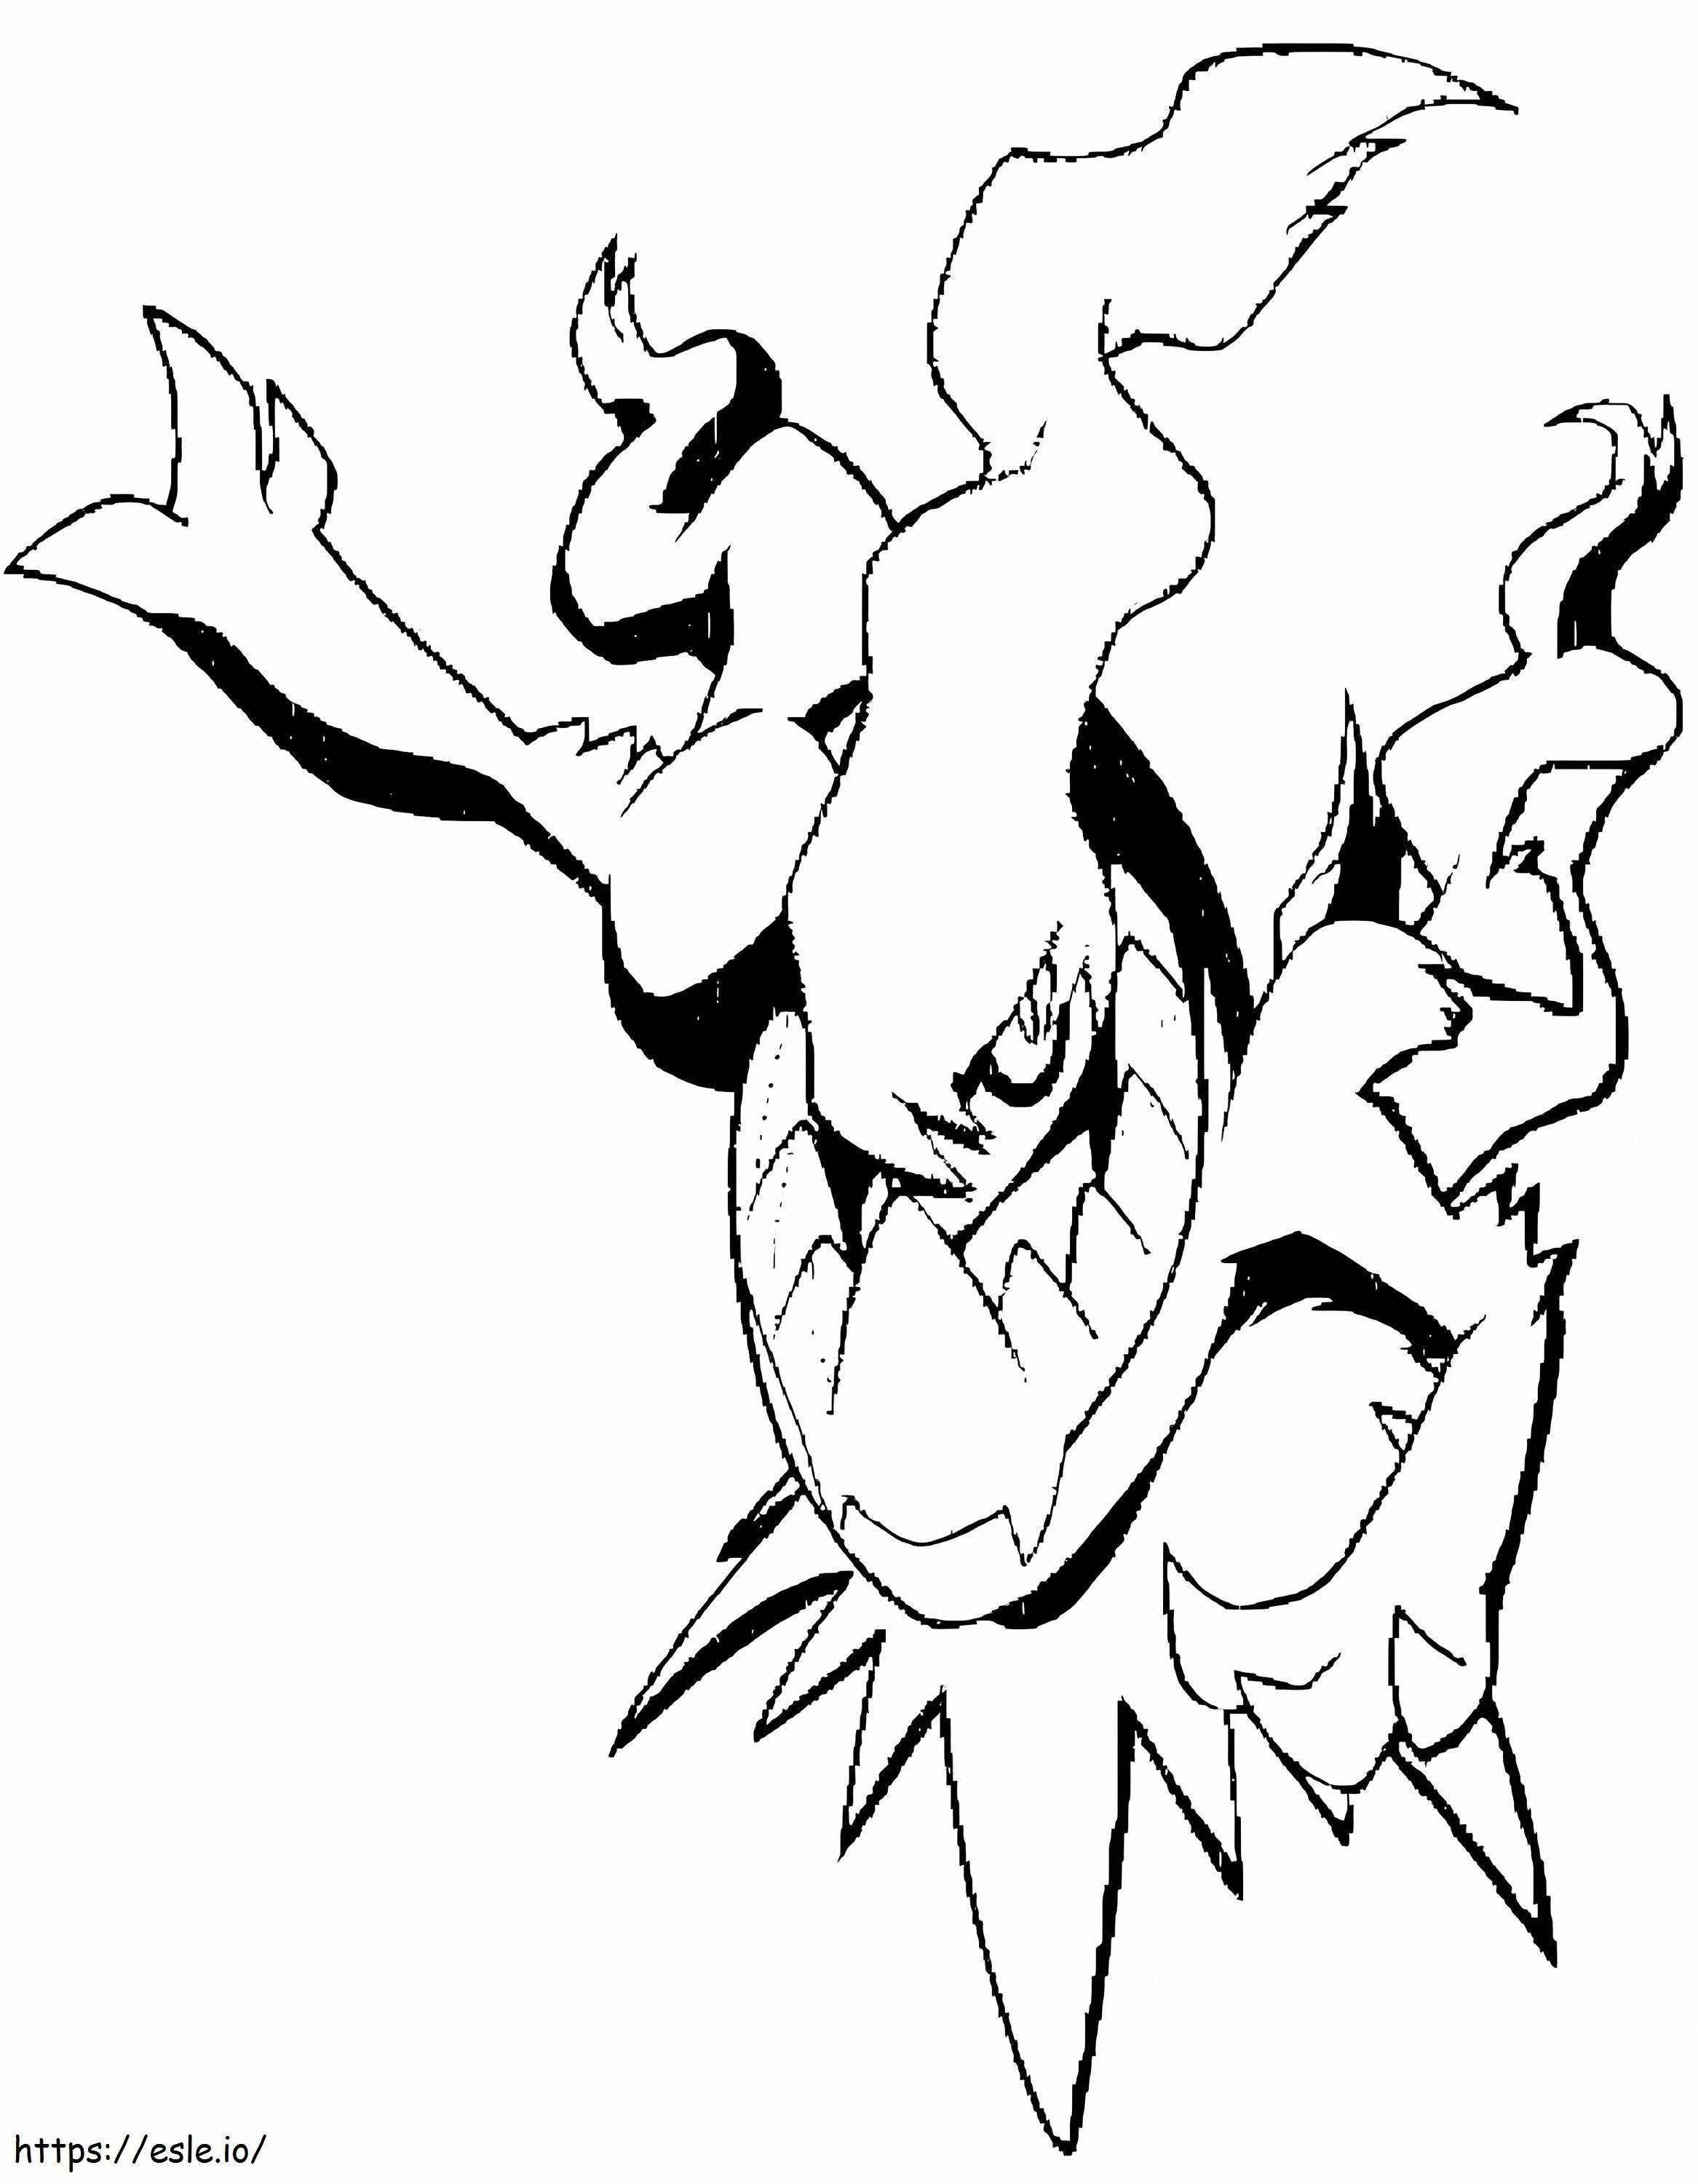 Darkrai Pokémon 3 ausmalbilder